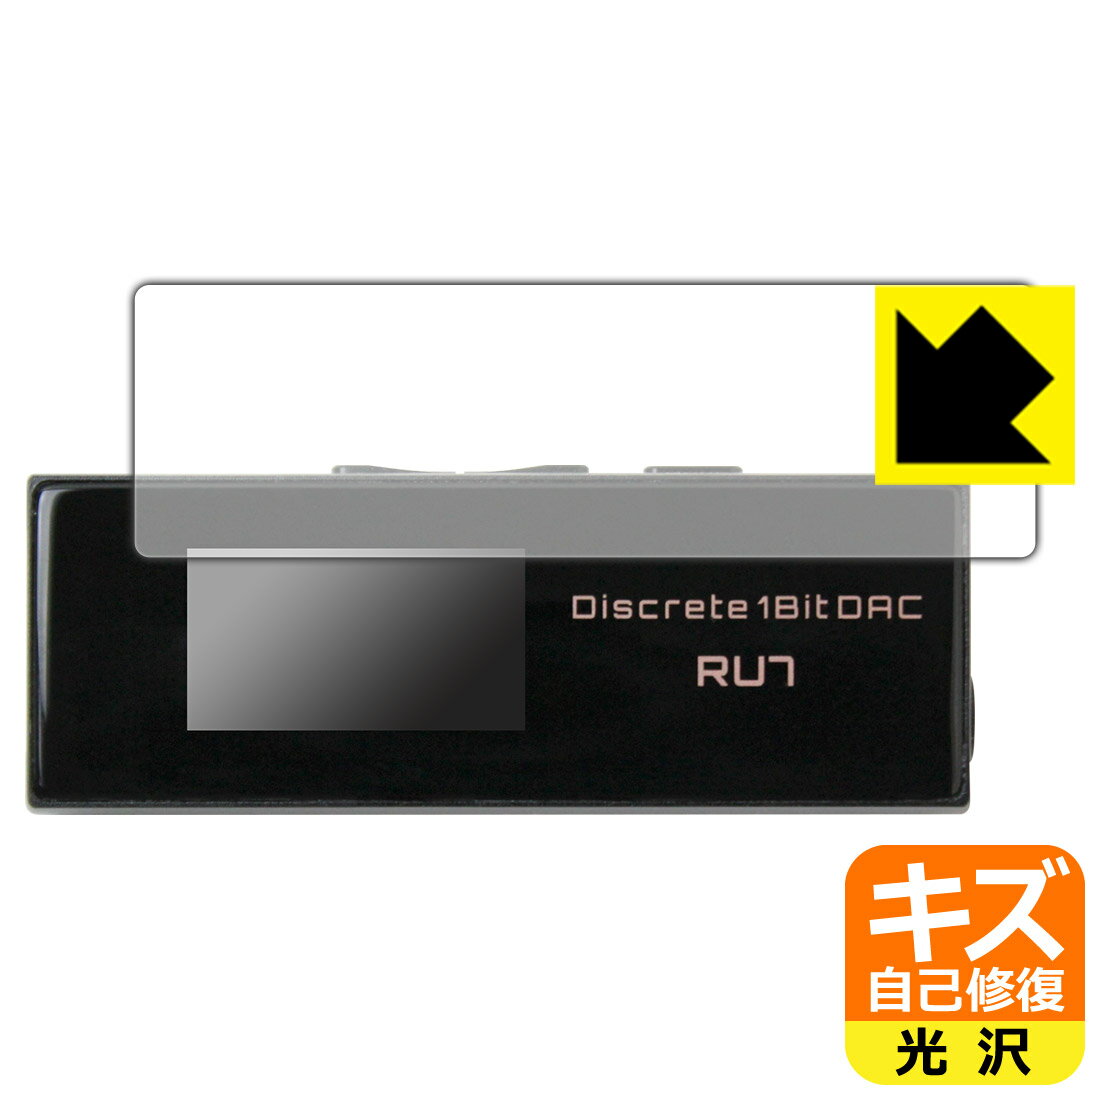 楽天PDA工房キズ自己修復保護フィルム Cayin RU7 ポータブルUSB DAC/AMP 日本製 自社製造直販